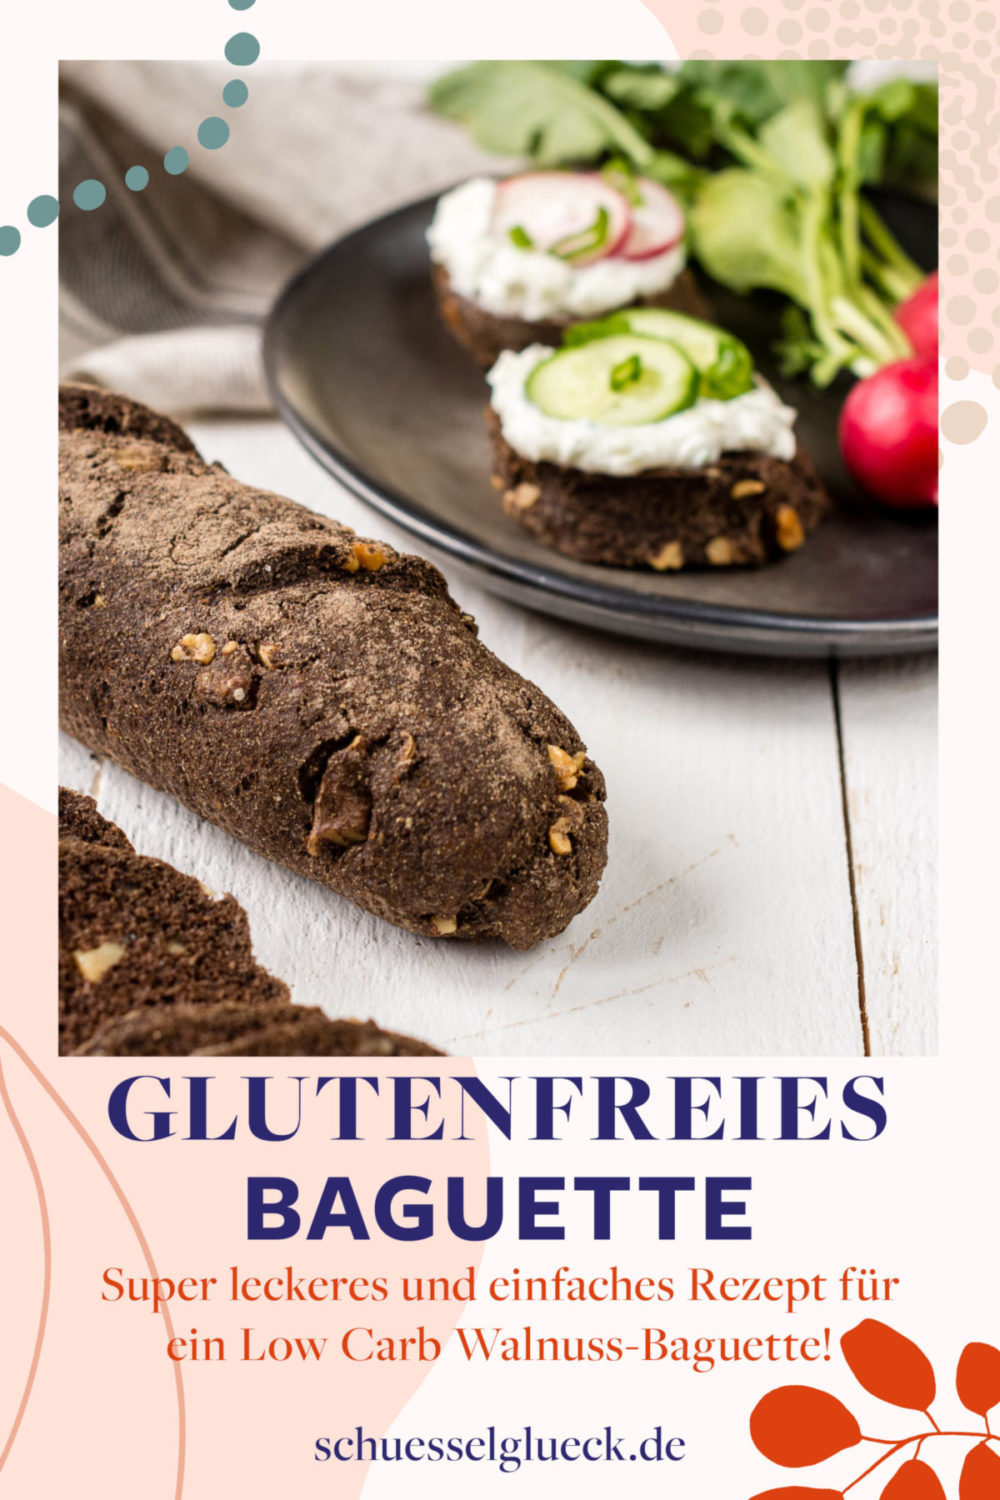 Low Carb Walnuss Baguette - glutenfrei und unglaublich saftig!